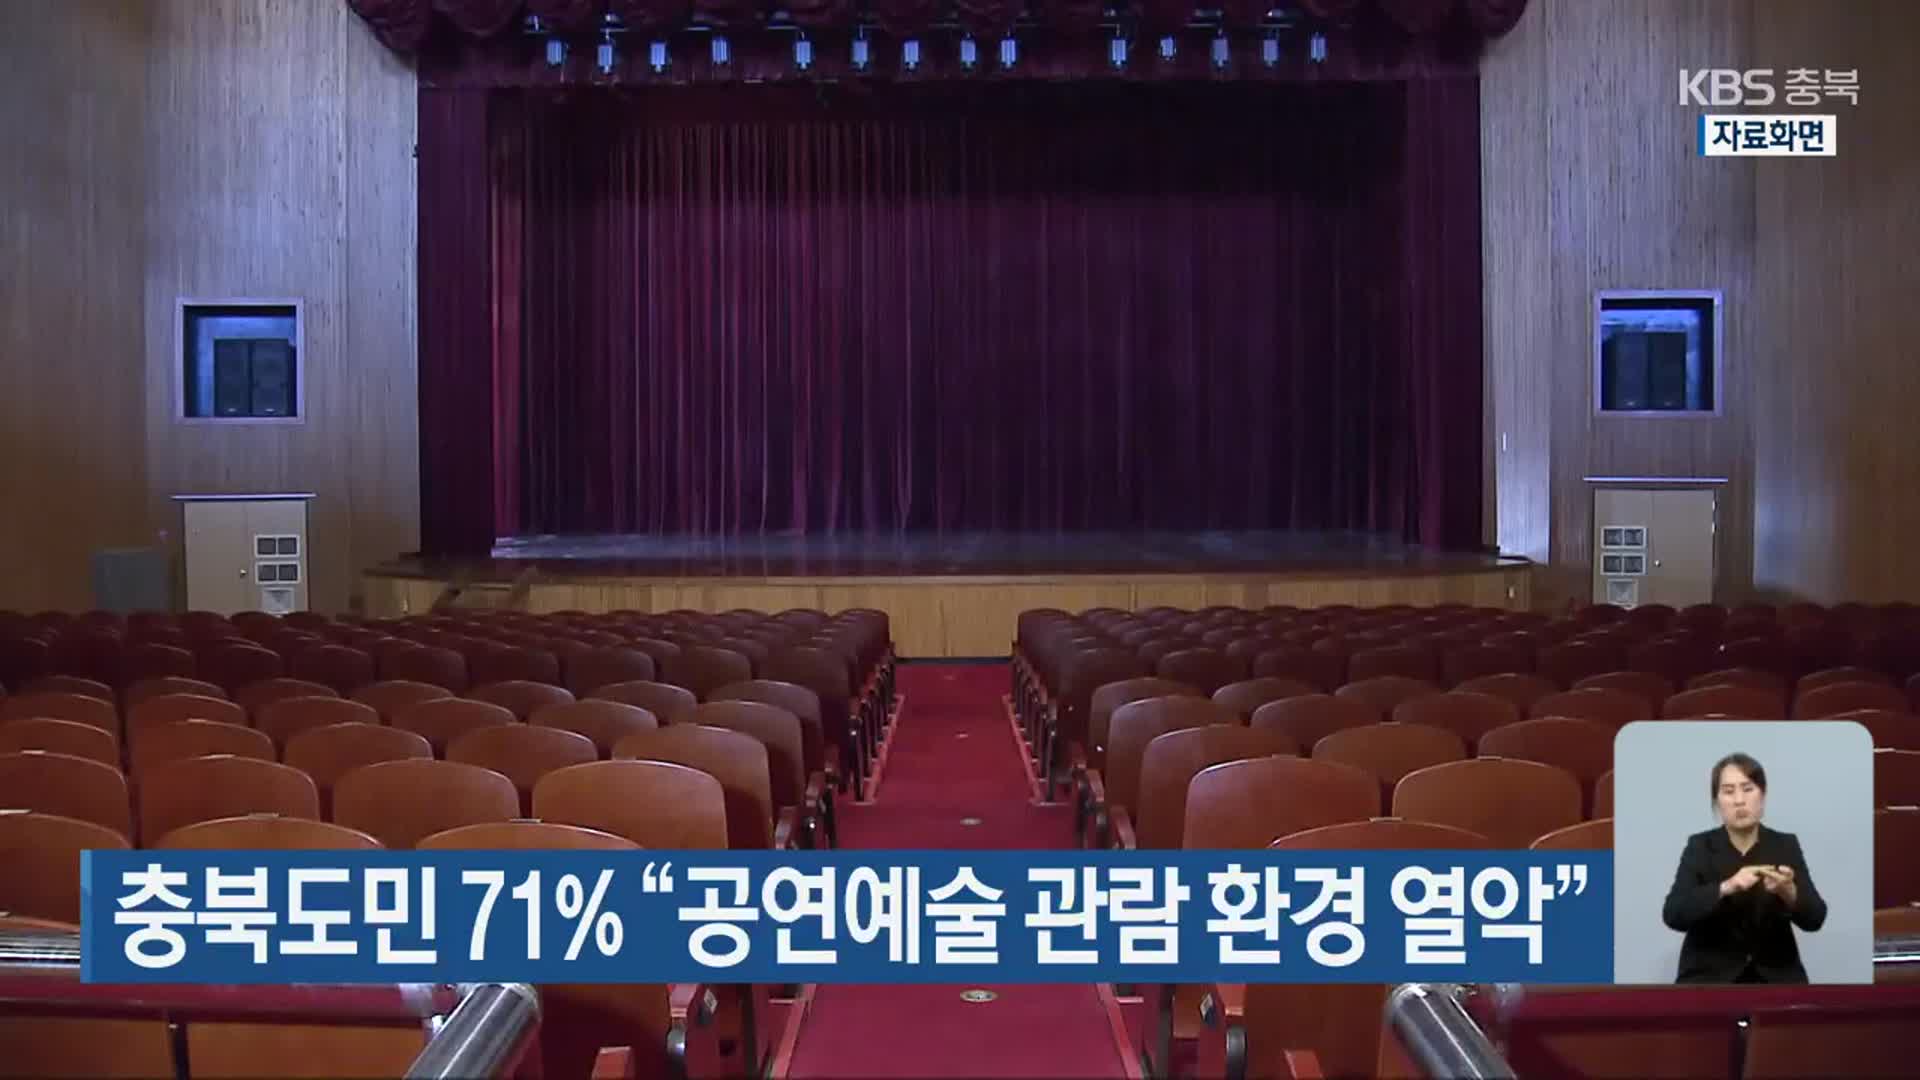 충북도민 71% “공연예술 관람 환경 열악”